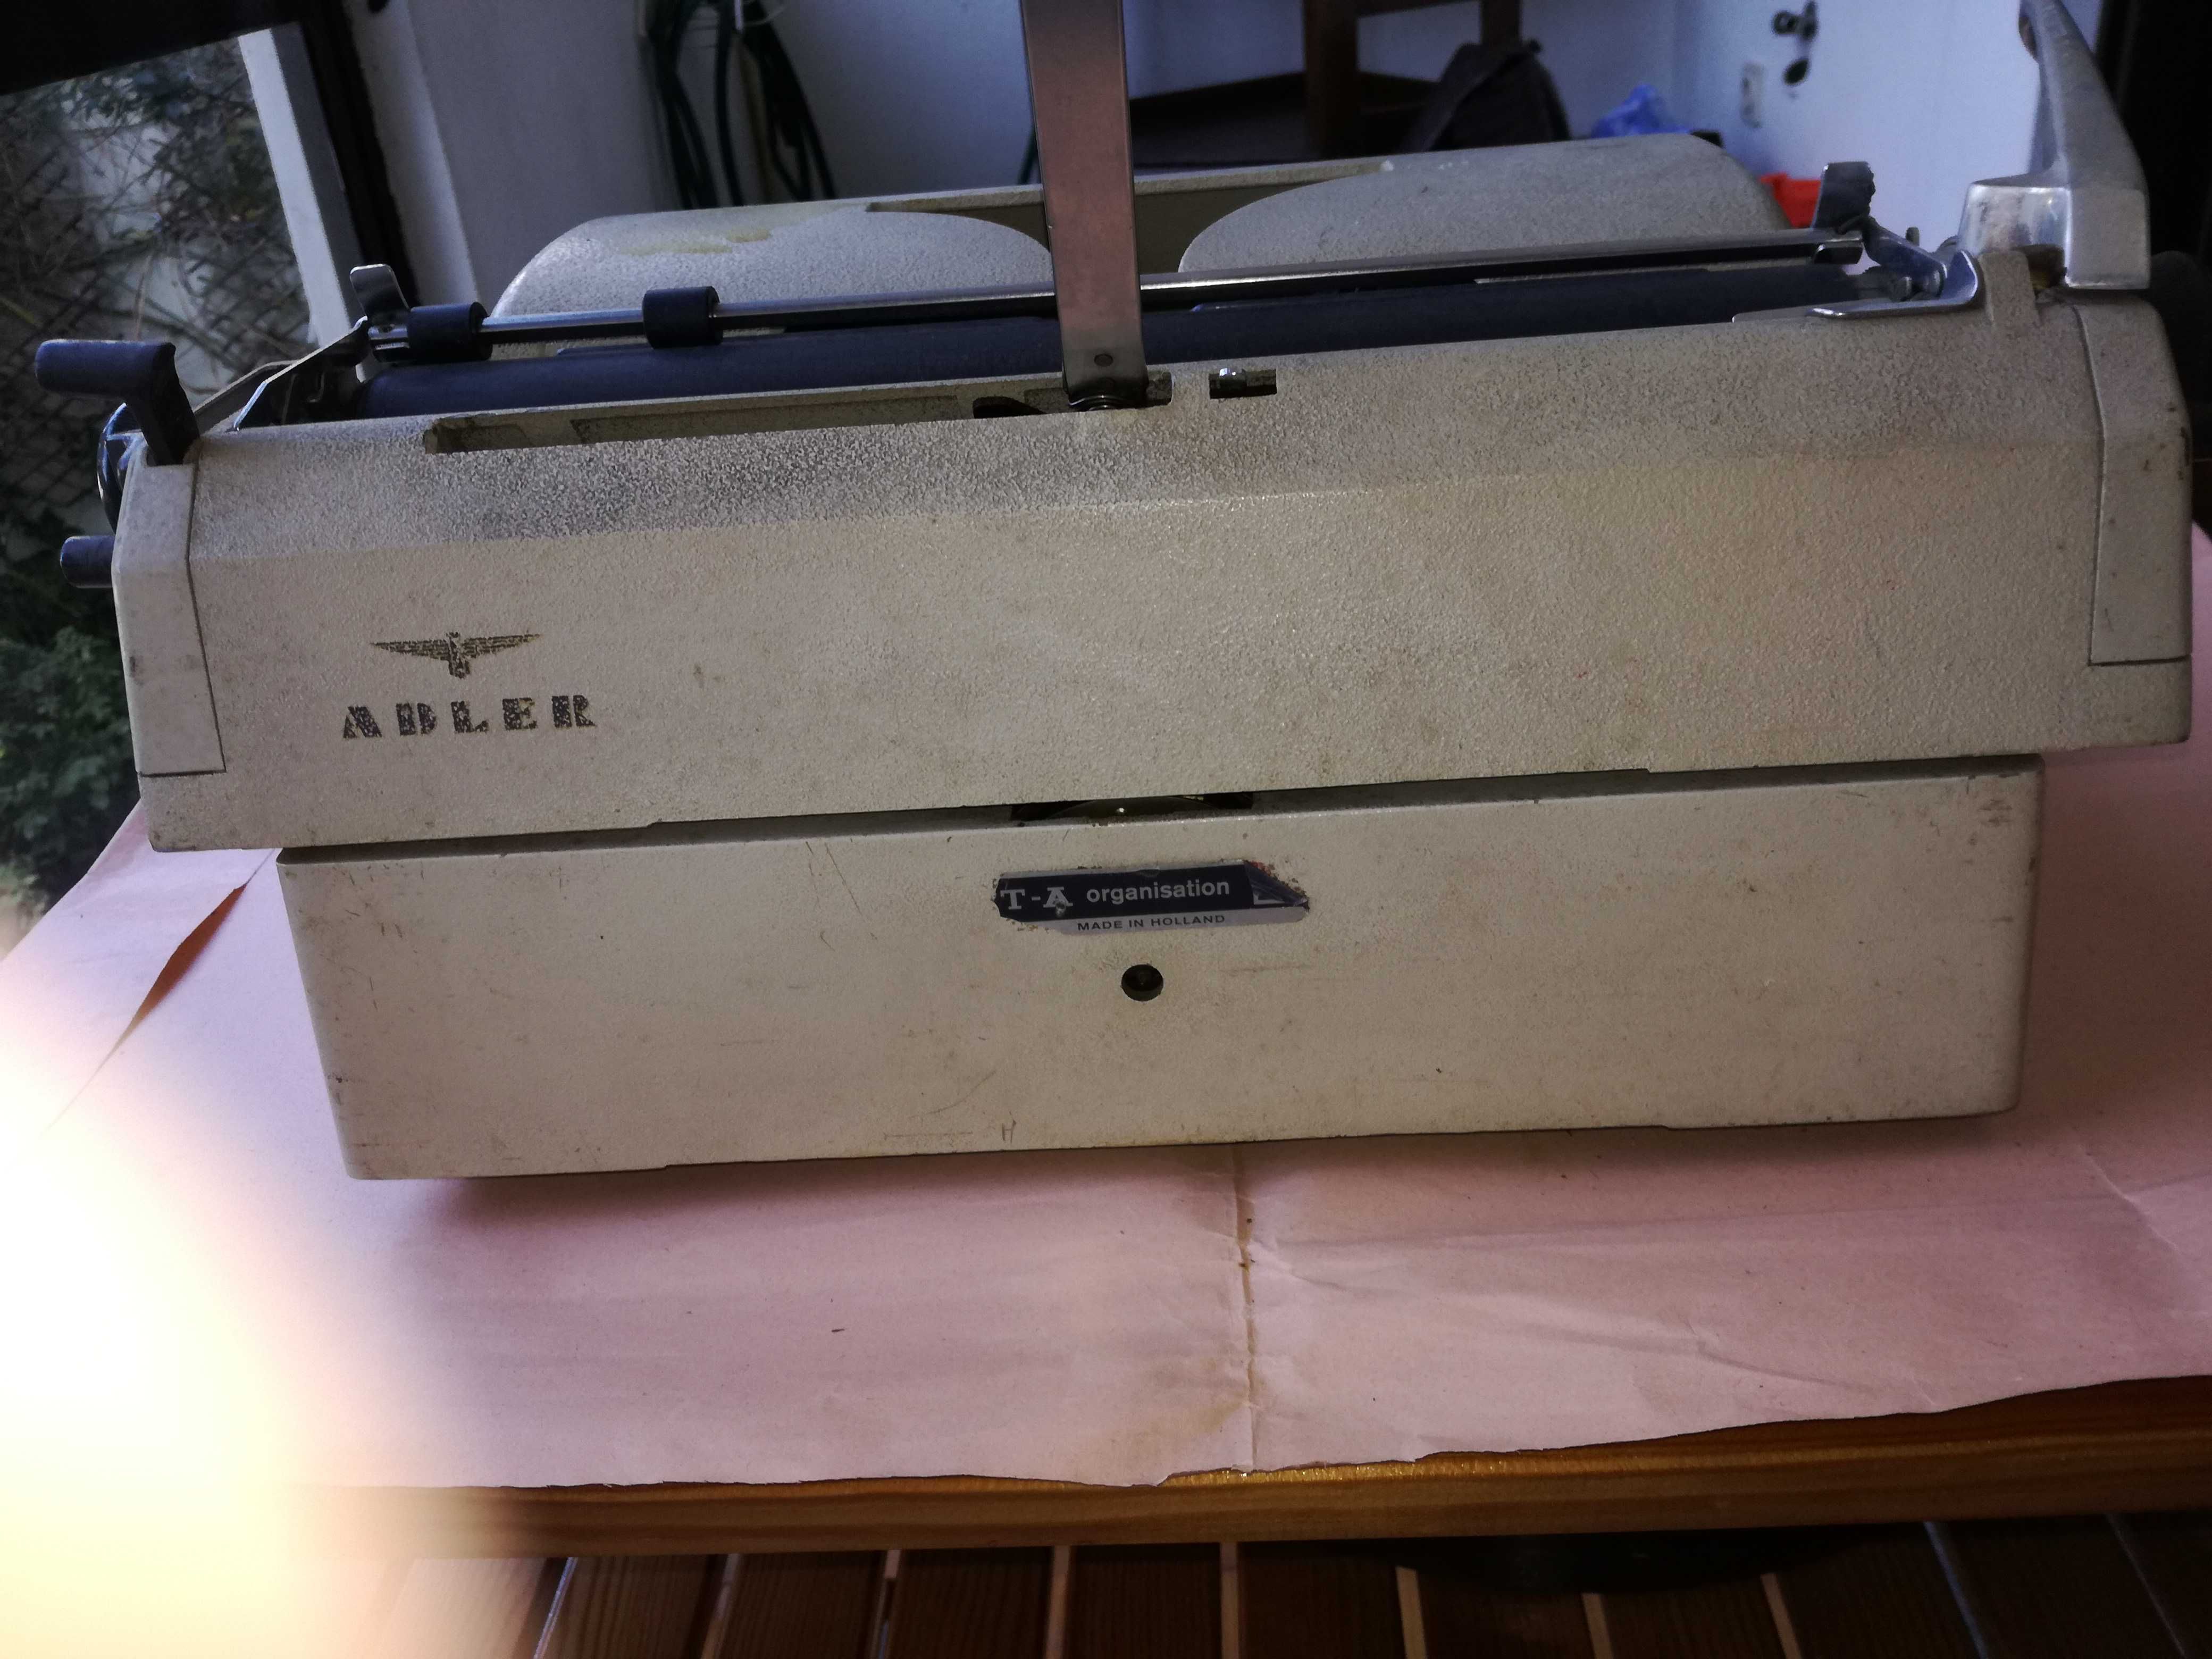 Máquina escrever antiga ADLER, fabricada Holanda anos 60-70